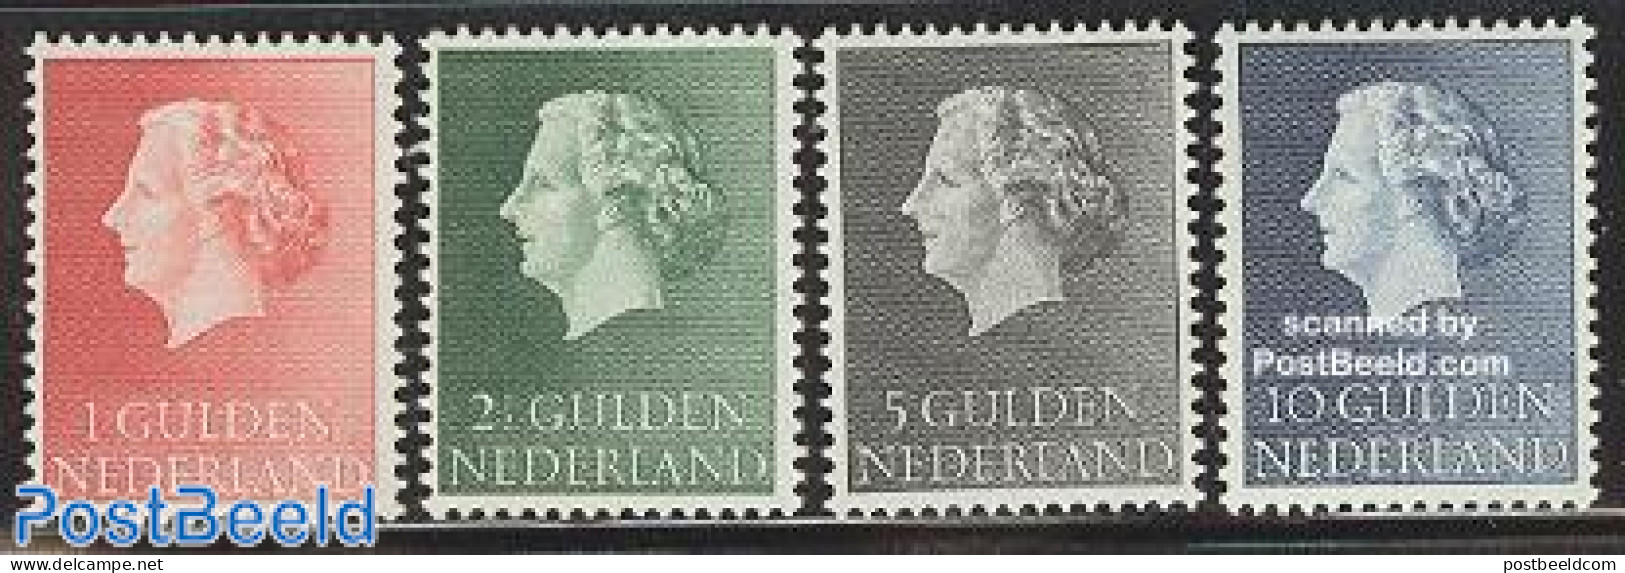 Netherlands 1954 Definitives 4v, Mint NH - Neufs